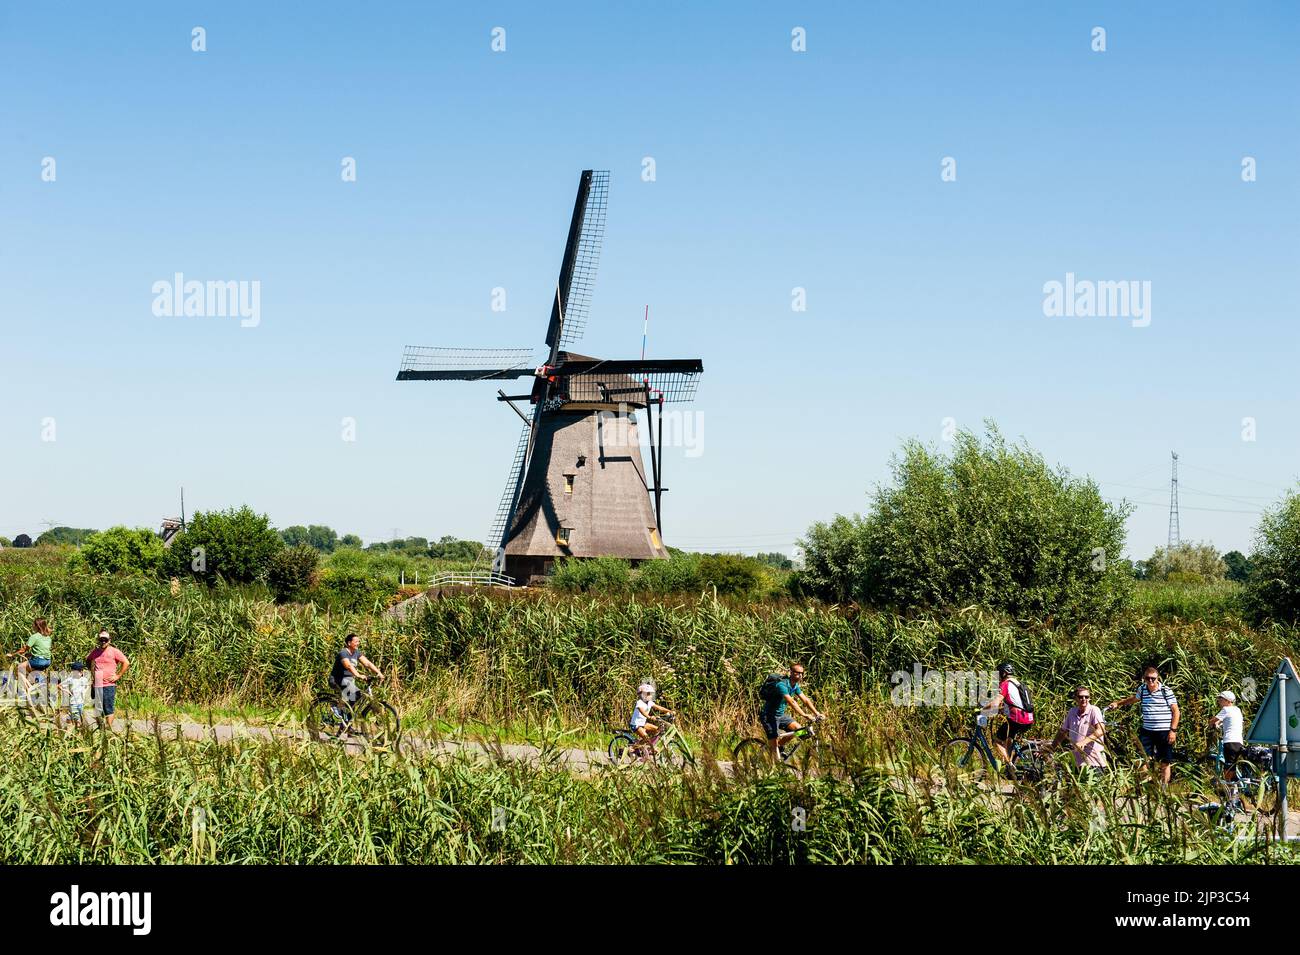 Kinderdijk, pays-Bas. 13th août 2022. Les touristes sont vus à pied autour des moulins à vent lors d'une journée très chaude. Dans la belle région riche en eau près de Dordrecht, vous trouverez les moulins à vent de Kinderdijk. Construits vers 1740, ces 19 magnifiques moulins à vent font partie d'un plus grand système de gestion de l'eau pour éviter les inondations. Aujourd'hui, ils symbolisent la gestion de l'eau aux pays-Bas et, en 1997, ils ont été déclarés site du patrimoine mondial de l'UNESCO. Chaque année, des milliers de touristes du monde entier visitent ce lieu emblématique. Crédit : SOPA Images Limited/Alamy Live News Banque D'Images